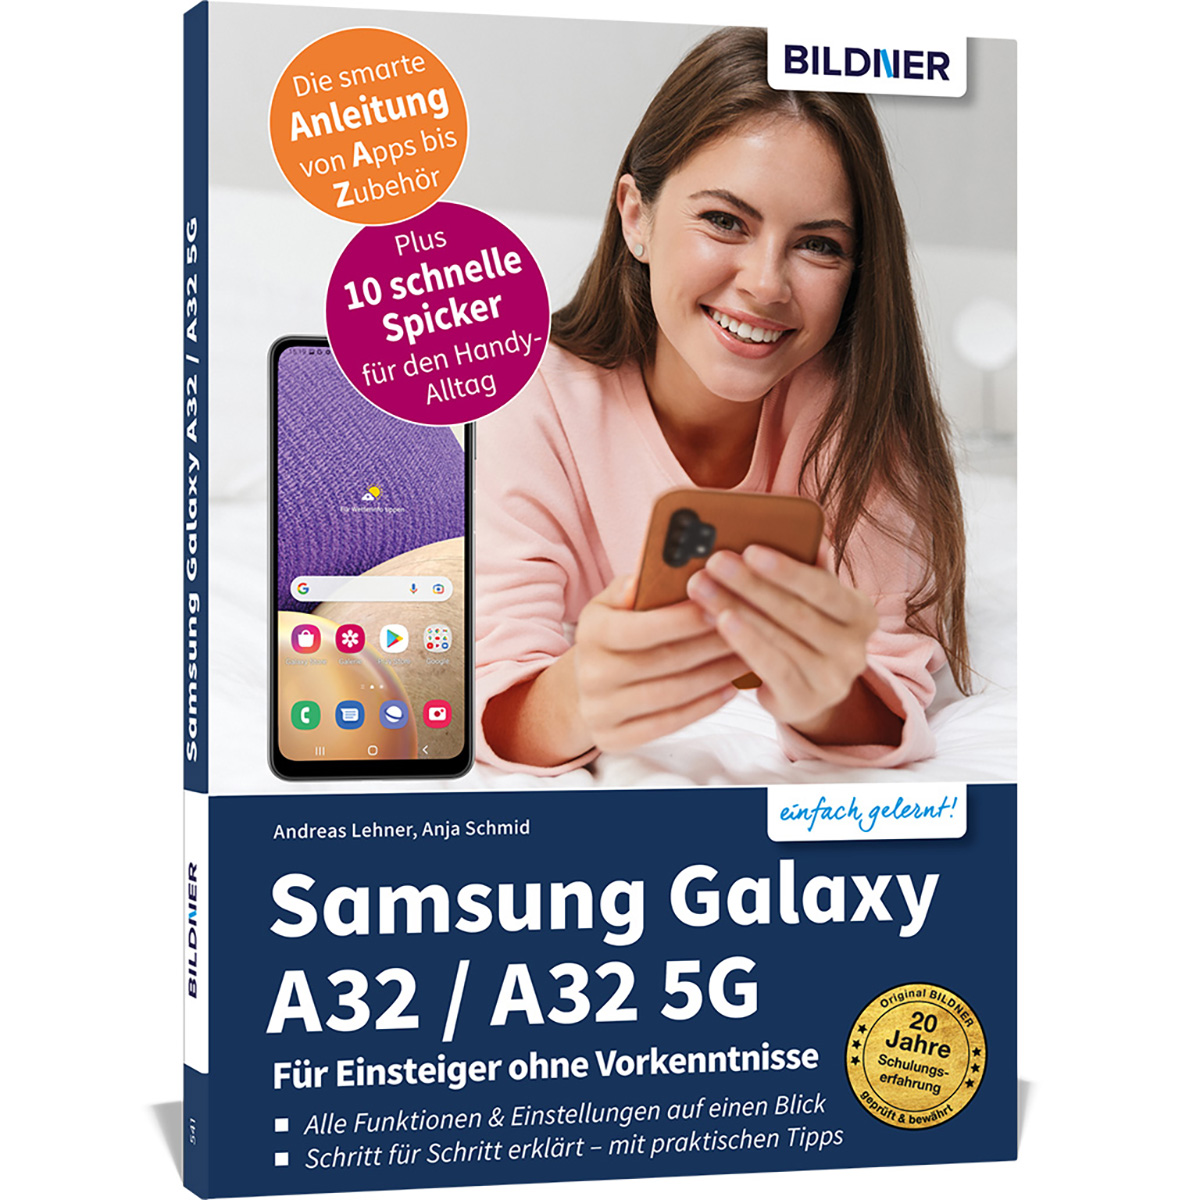 A32 Samsung A32 Galaxy Einsteiger / 5G Vorkenntnisse Für - ohne